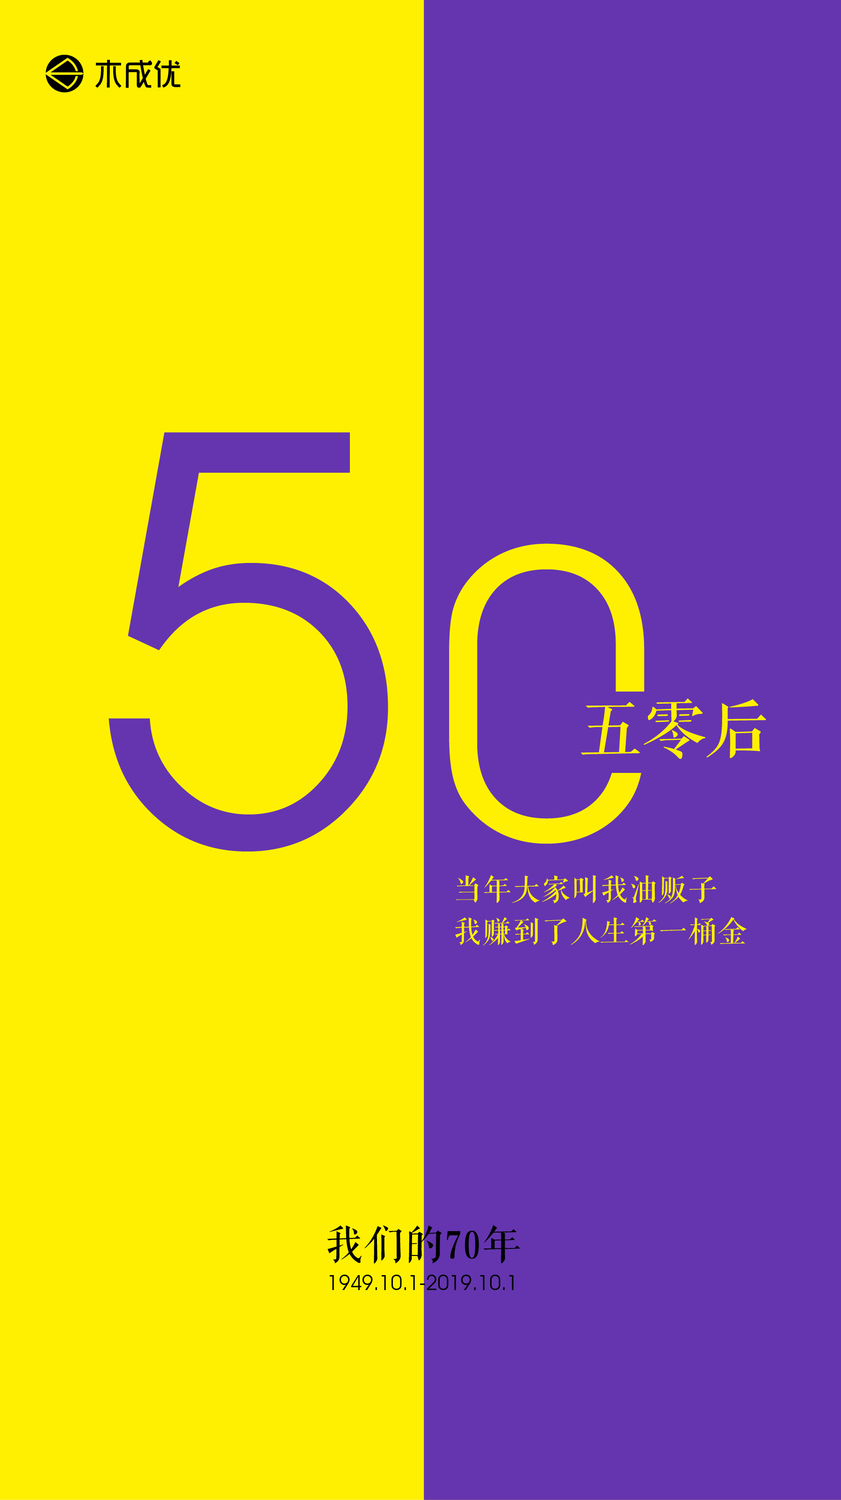 海报国庆对称-06.jpg